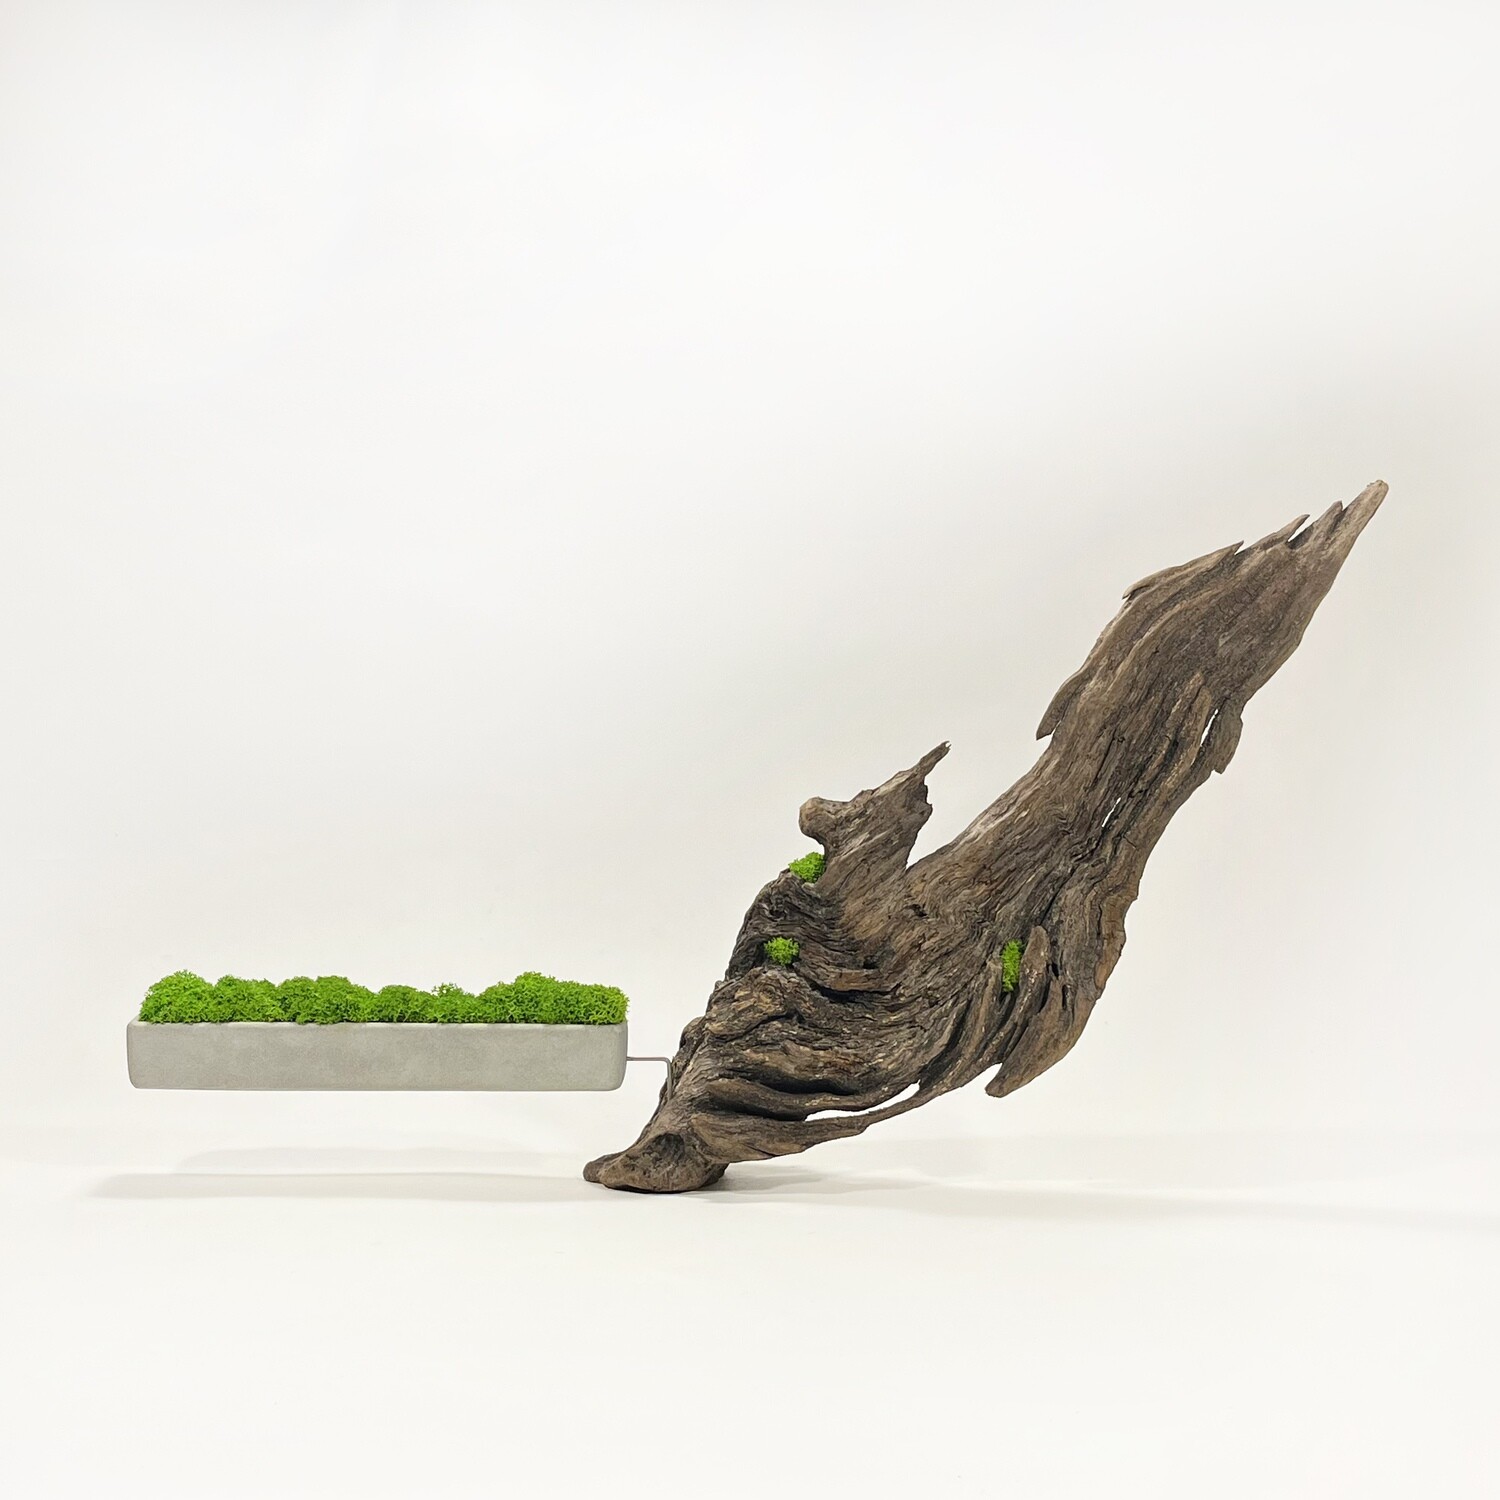 Disequilibrio in Equilibrio scultura con Muschio stabilizzato